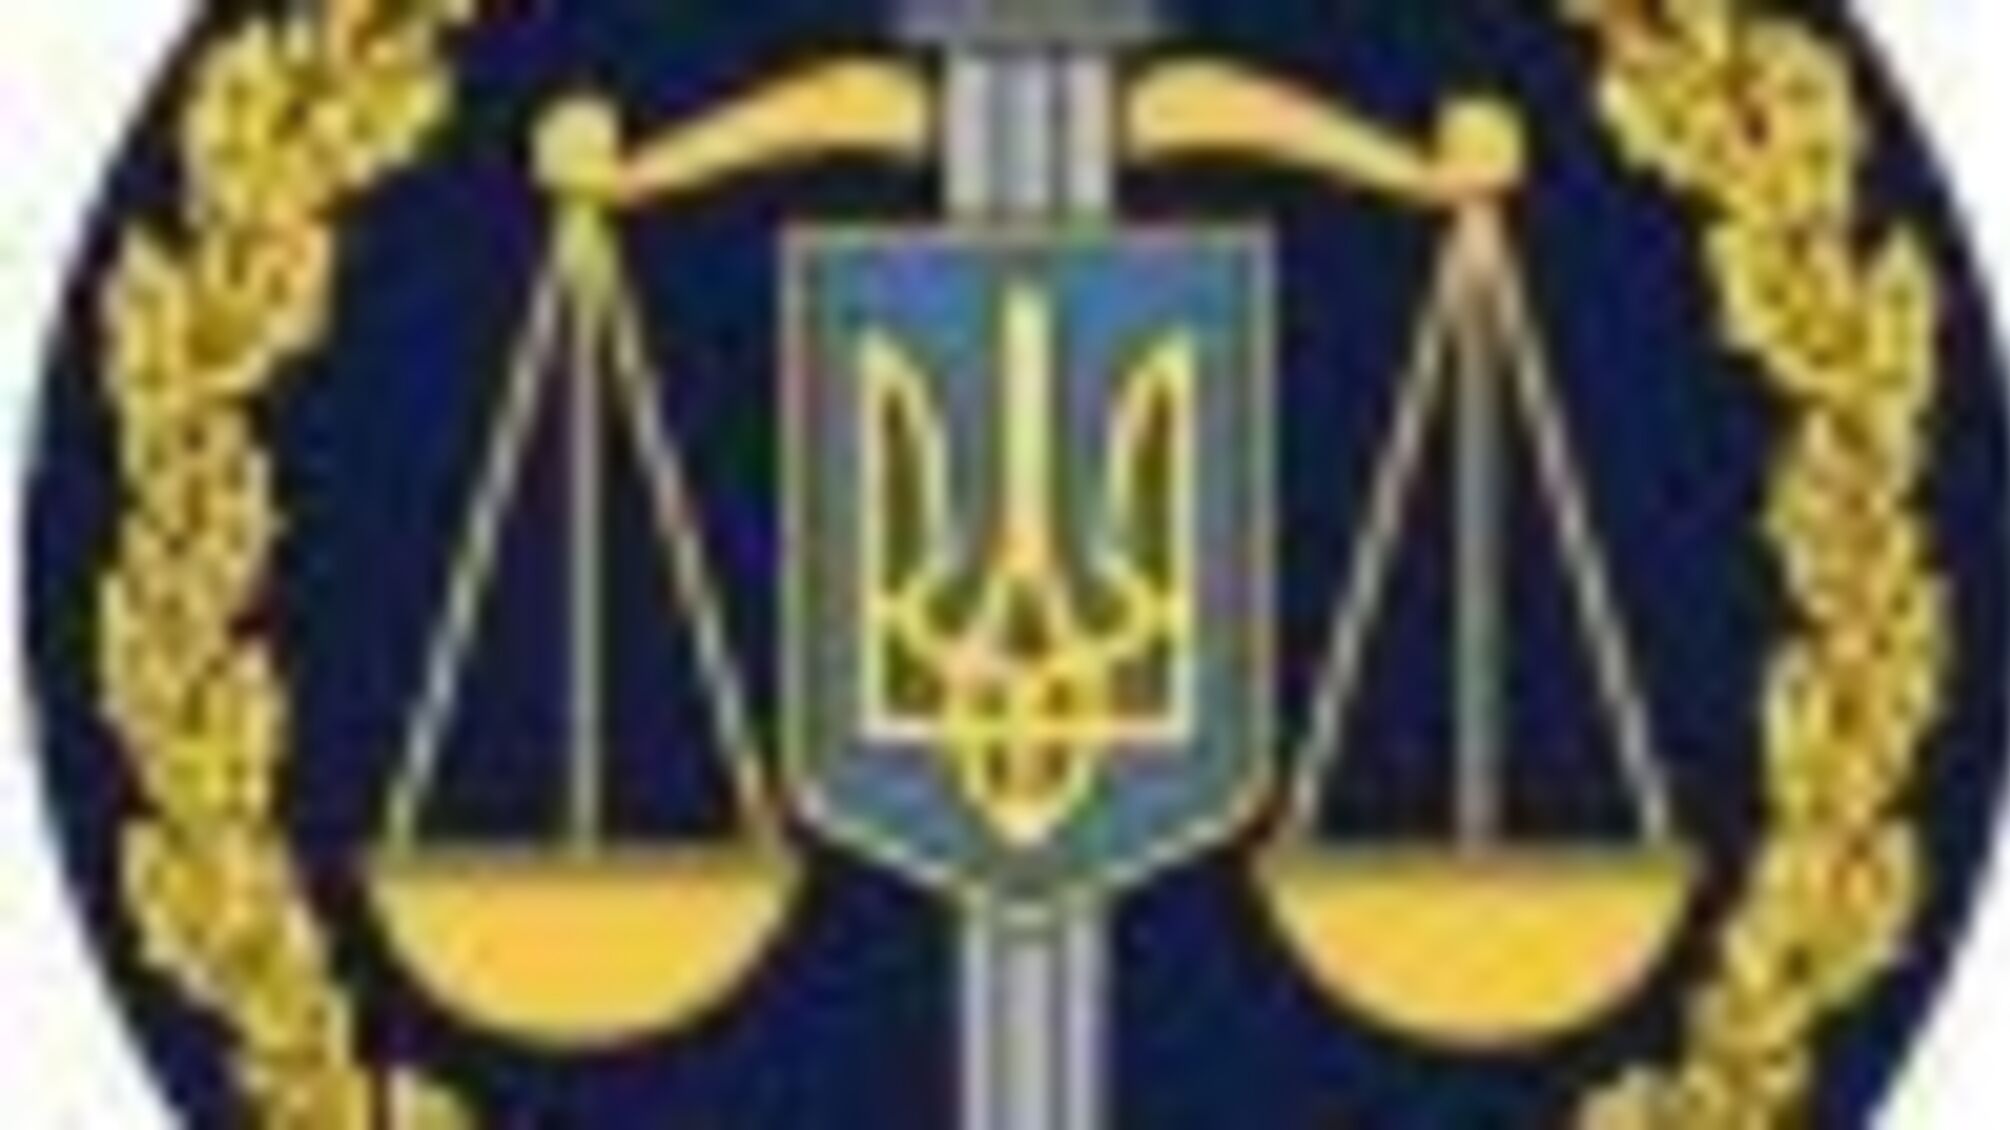 Припинено діяльність незаконного грального центру на Харківщині (ФОТО)